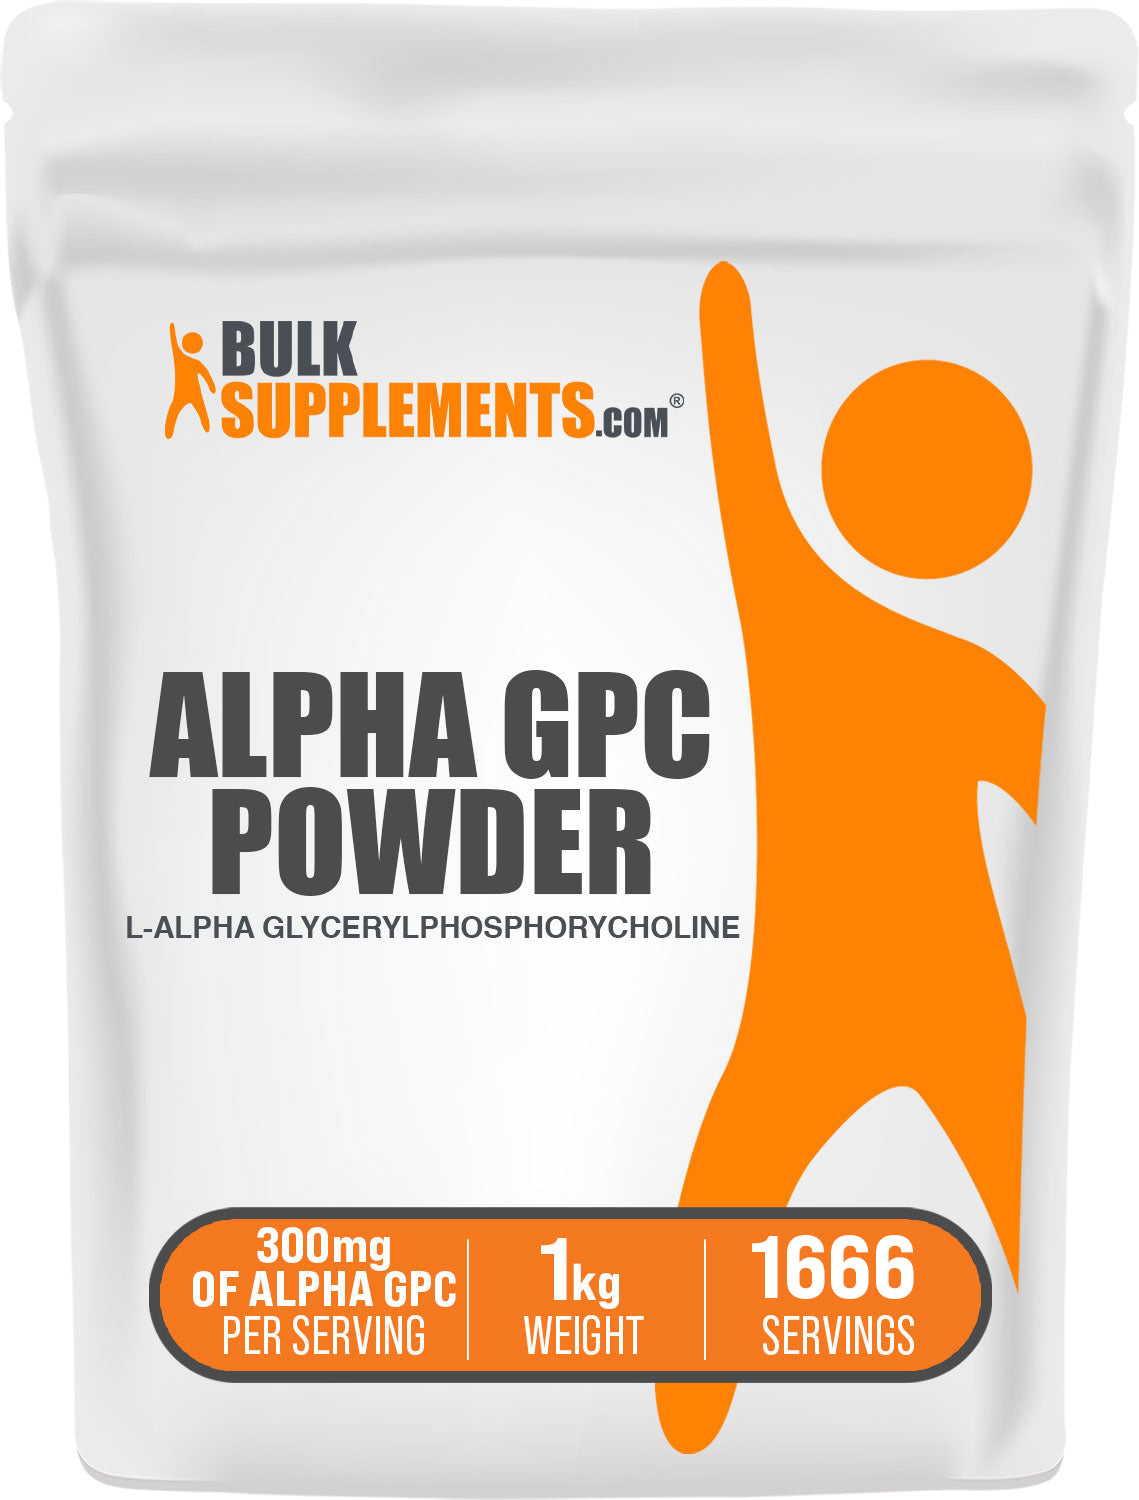 BulkSupplements.com Alpha GPC powder 1kg bag image